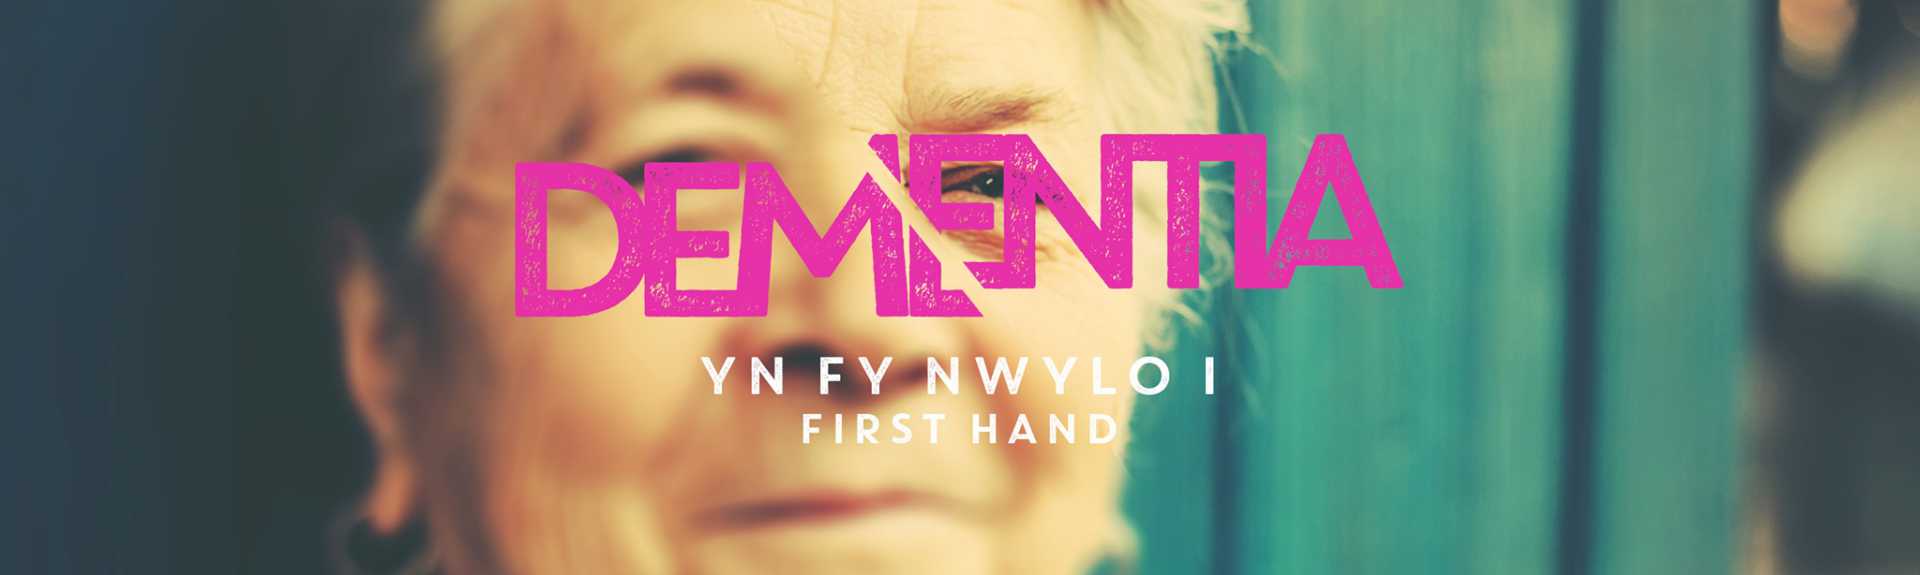 Dementia Yn Fy Nwylo I / First Hand